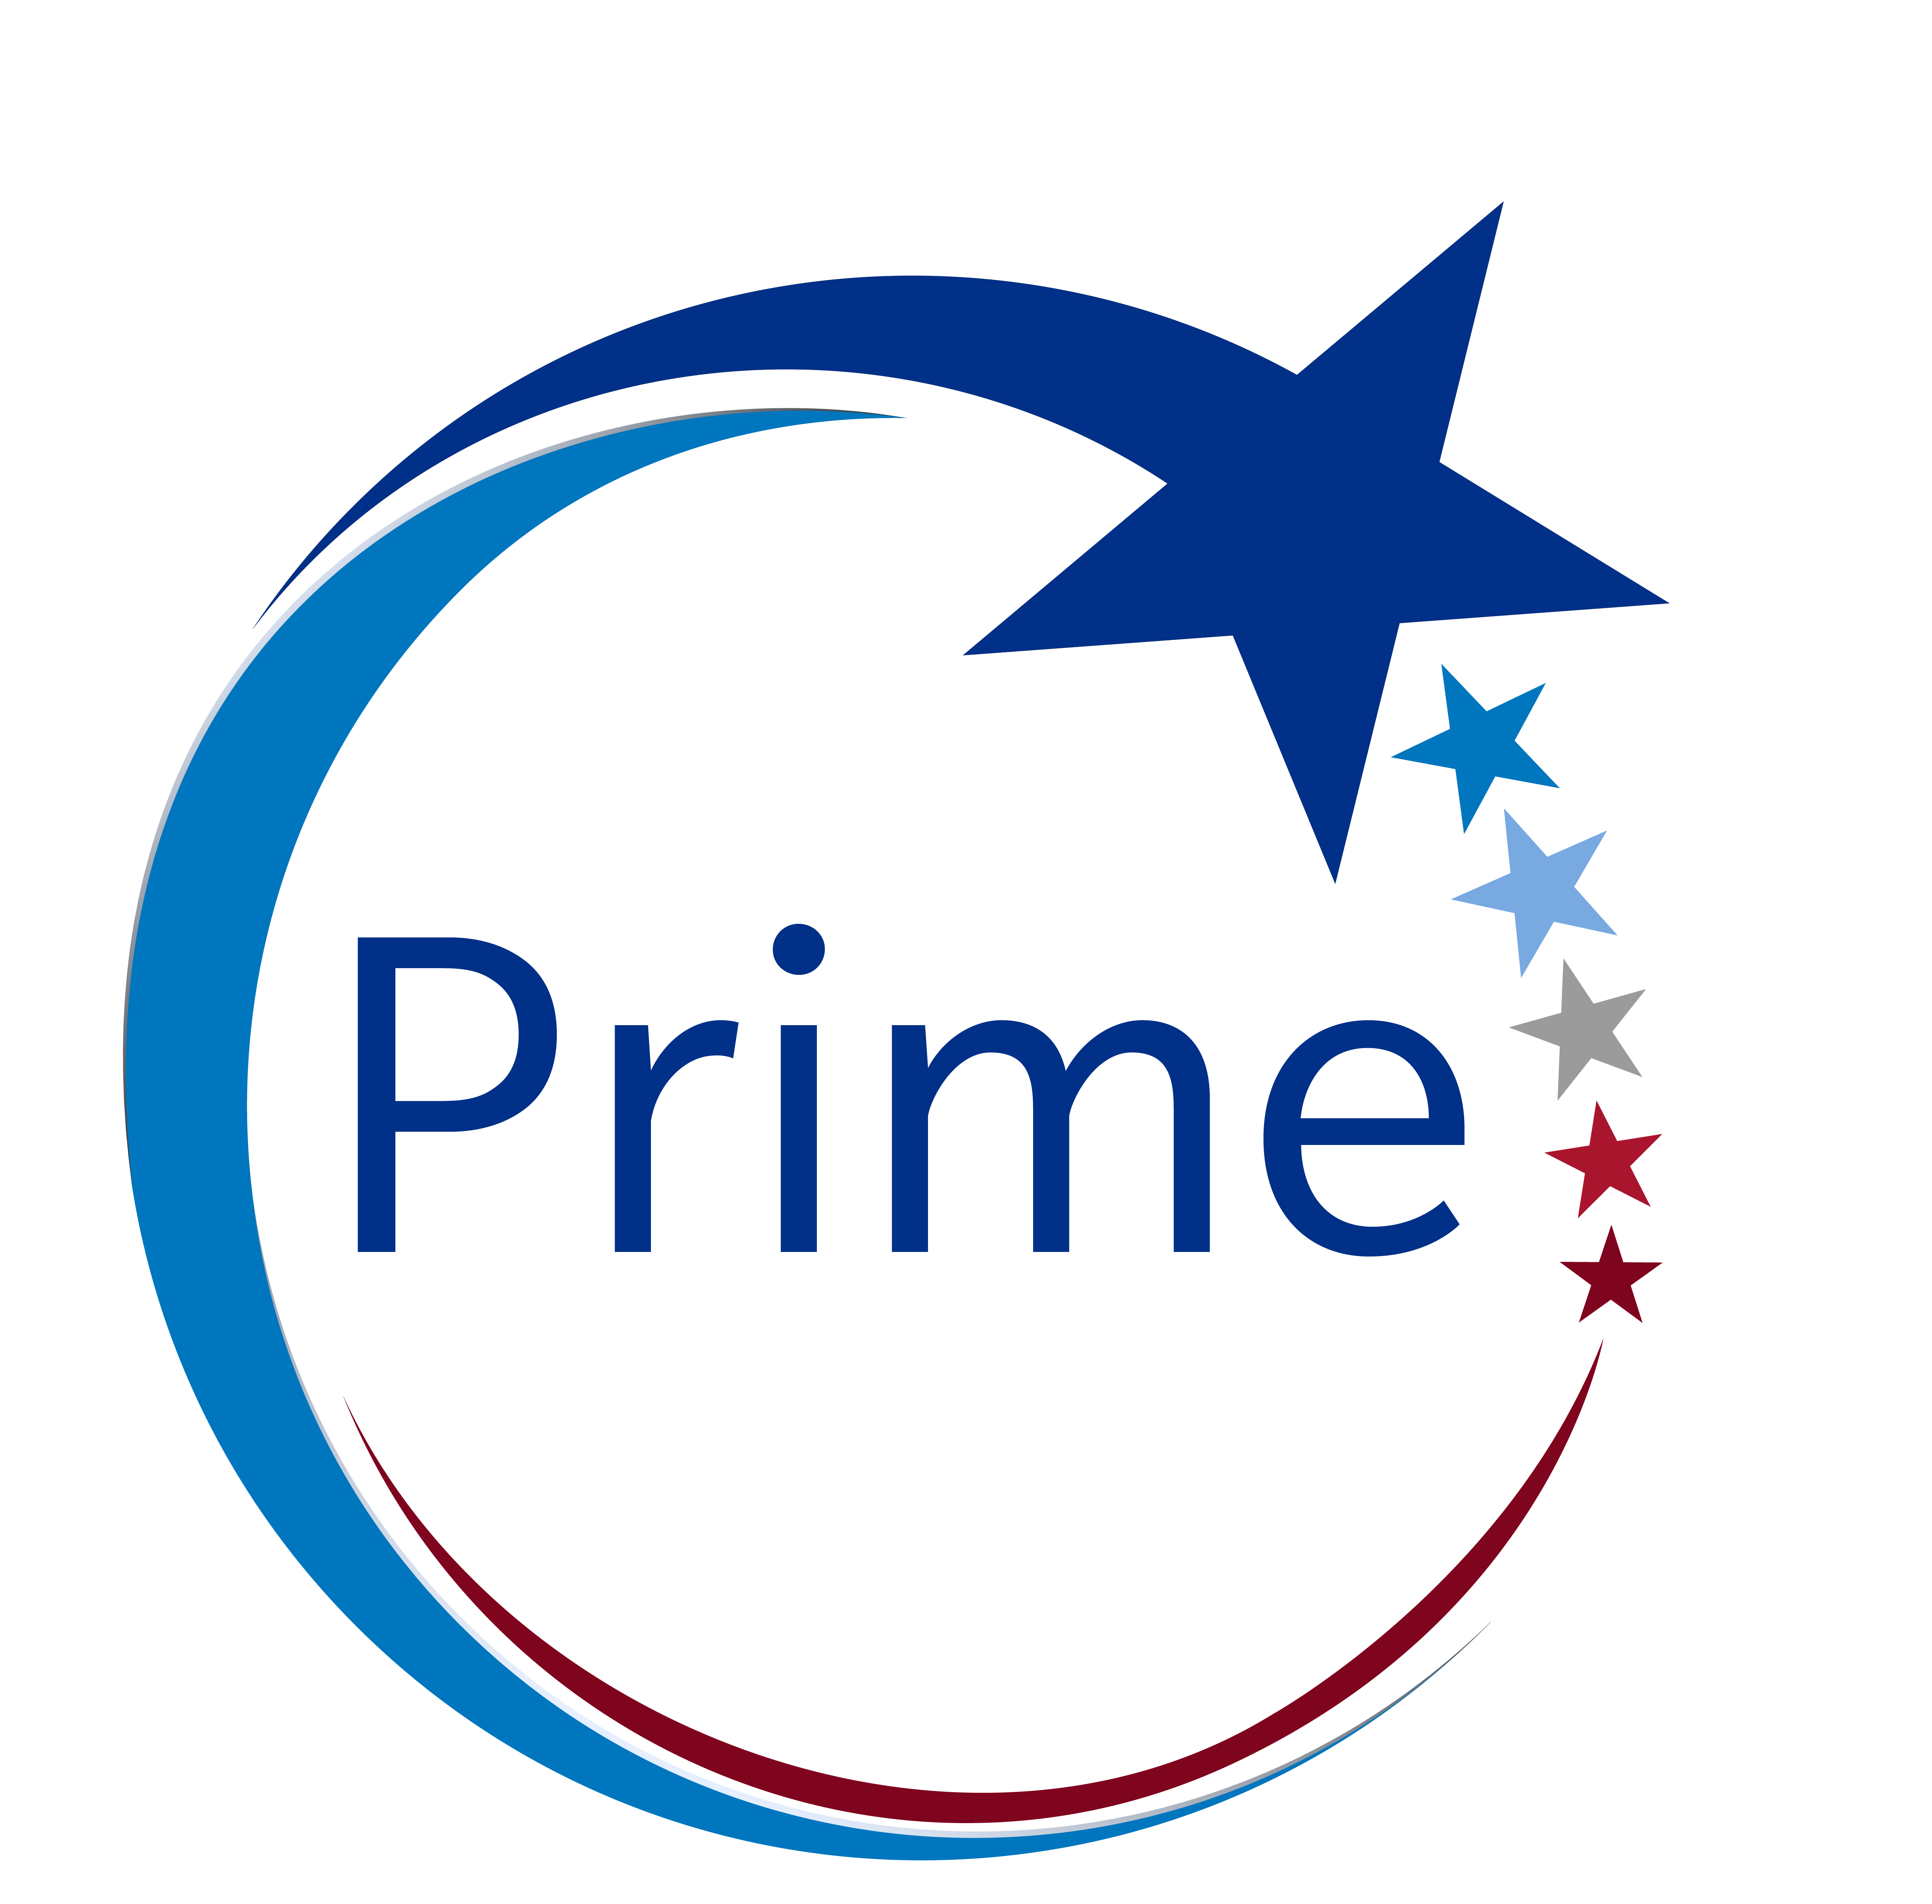 Prime Award logo